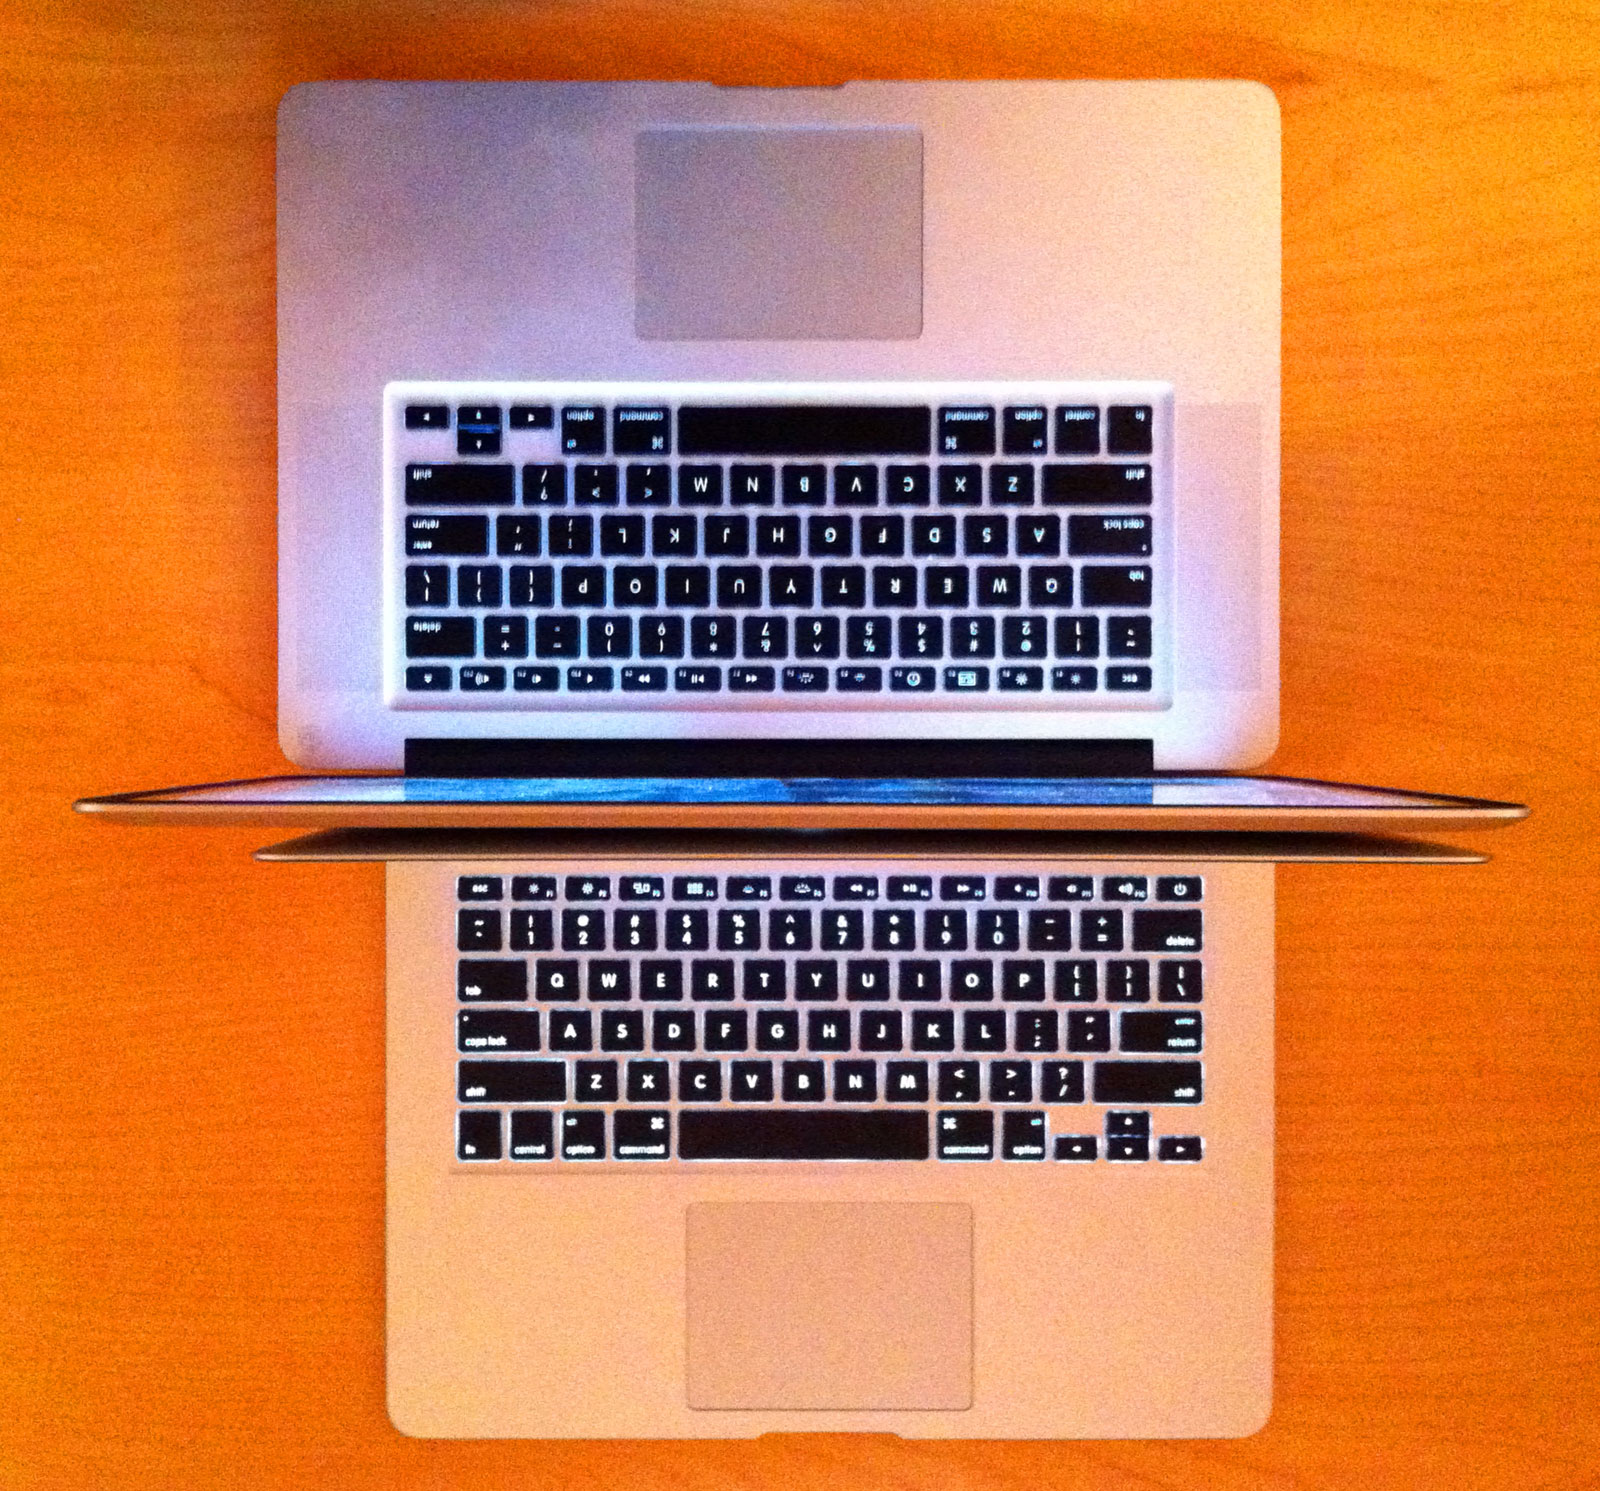 MacBook Pro 2013 vs MacBook Air 2013: bạn sẽ mua loại nào? - Fptshop.com.vn